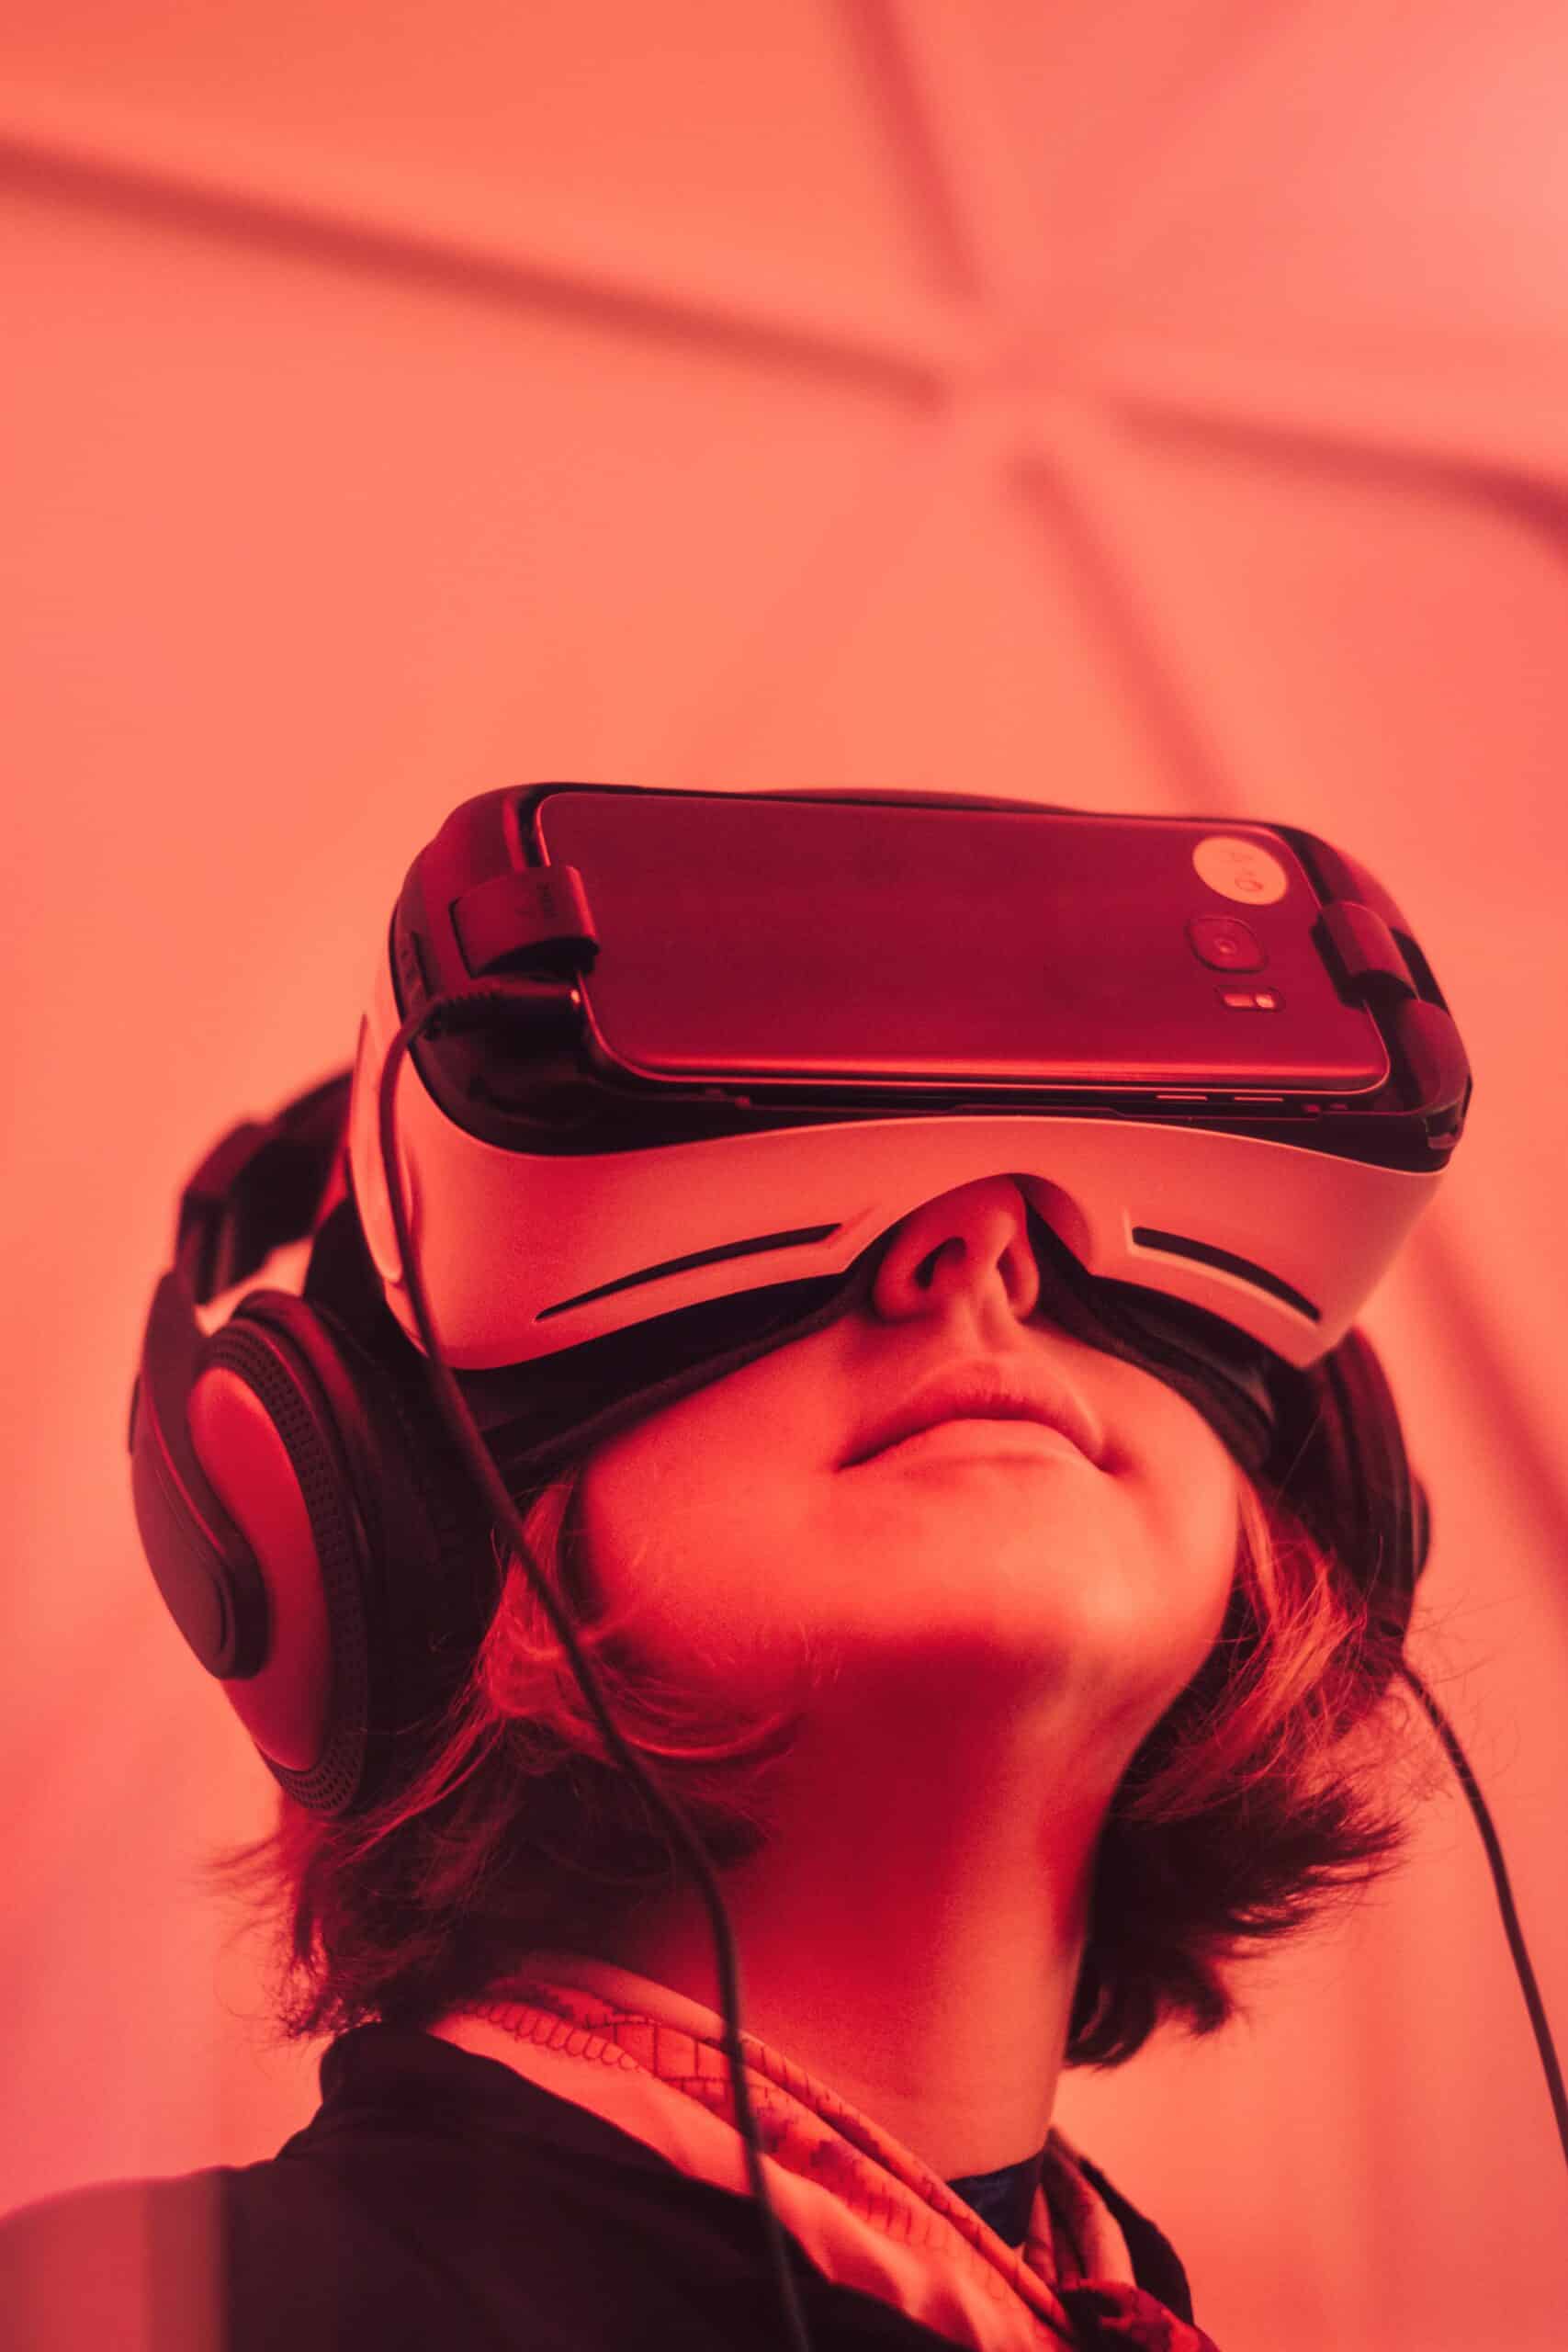 Zukunft des Online Dating - Virtual Reality und virtuelle Welten